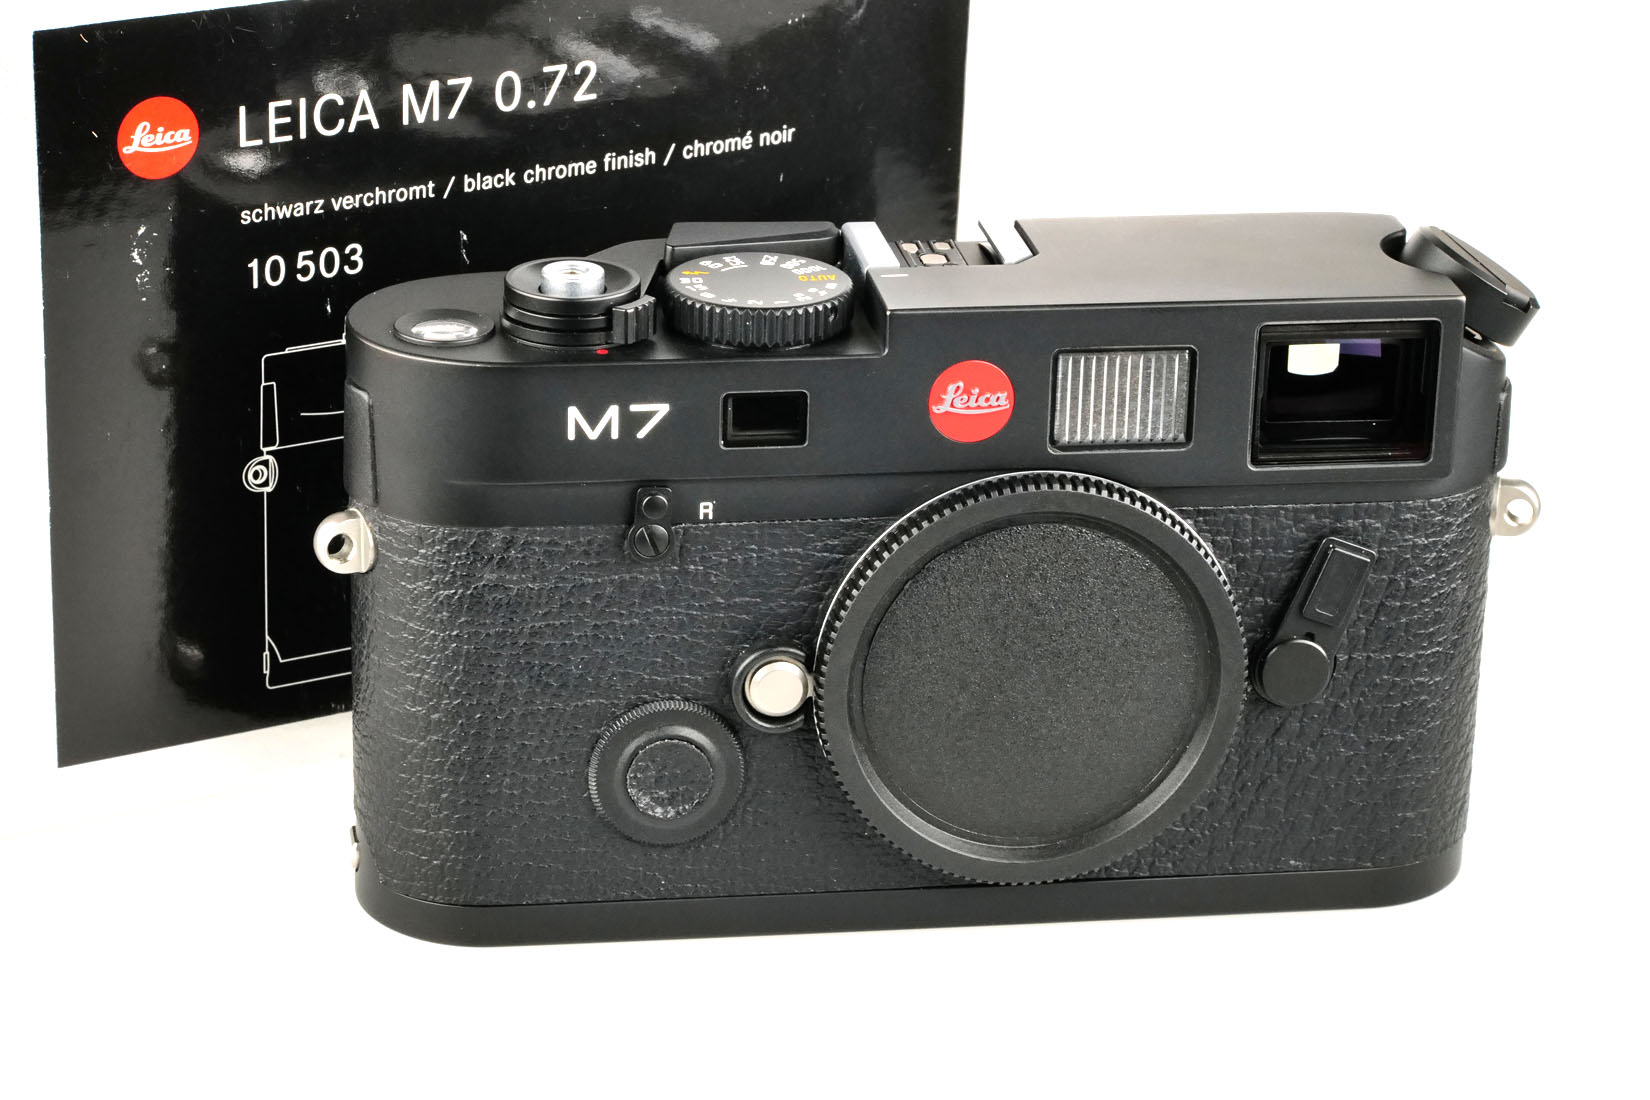 Leica M7 0.72, black chrome 10503